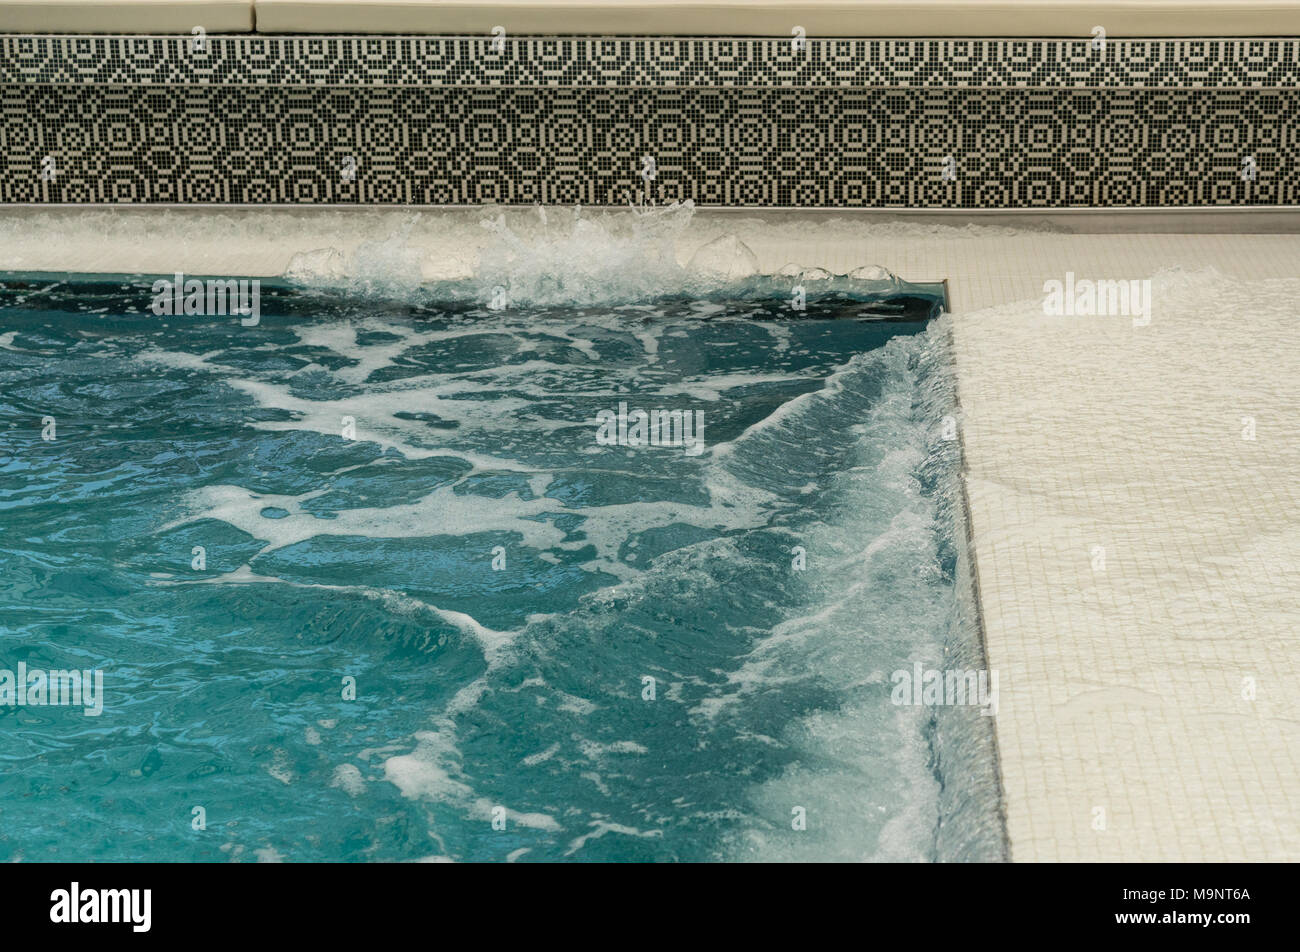 Water sloshing around tiled swimming pool on cruise ship Stock Photo